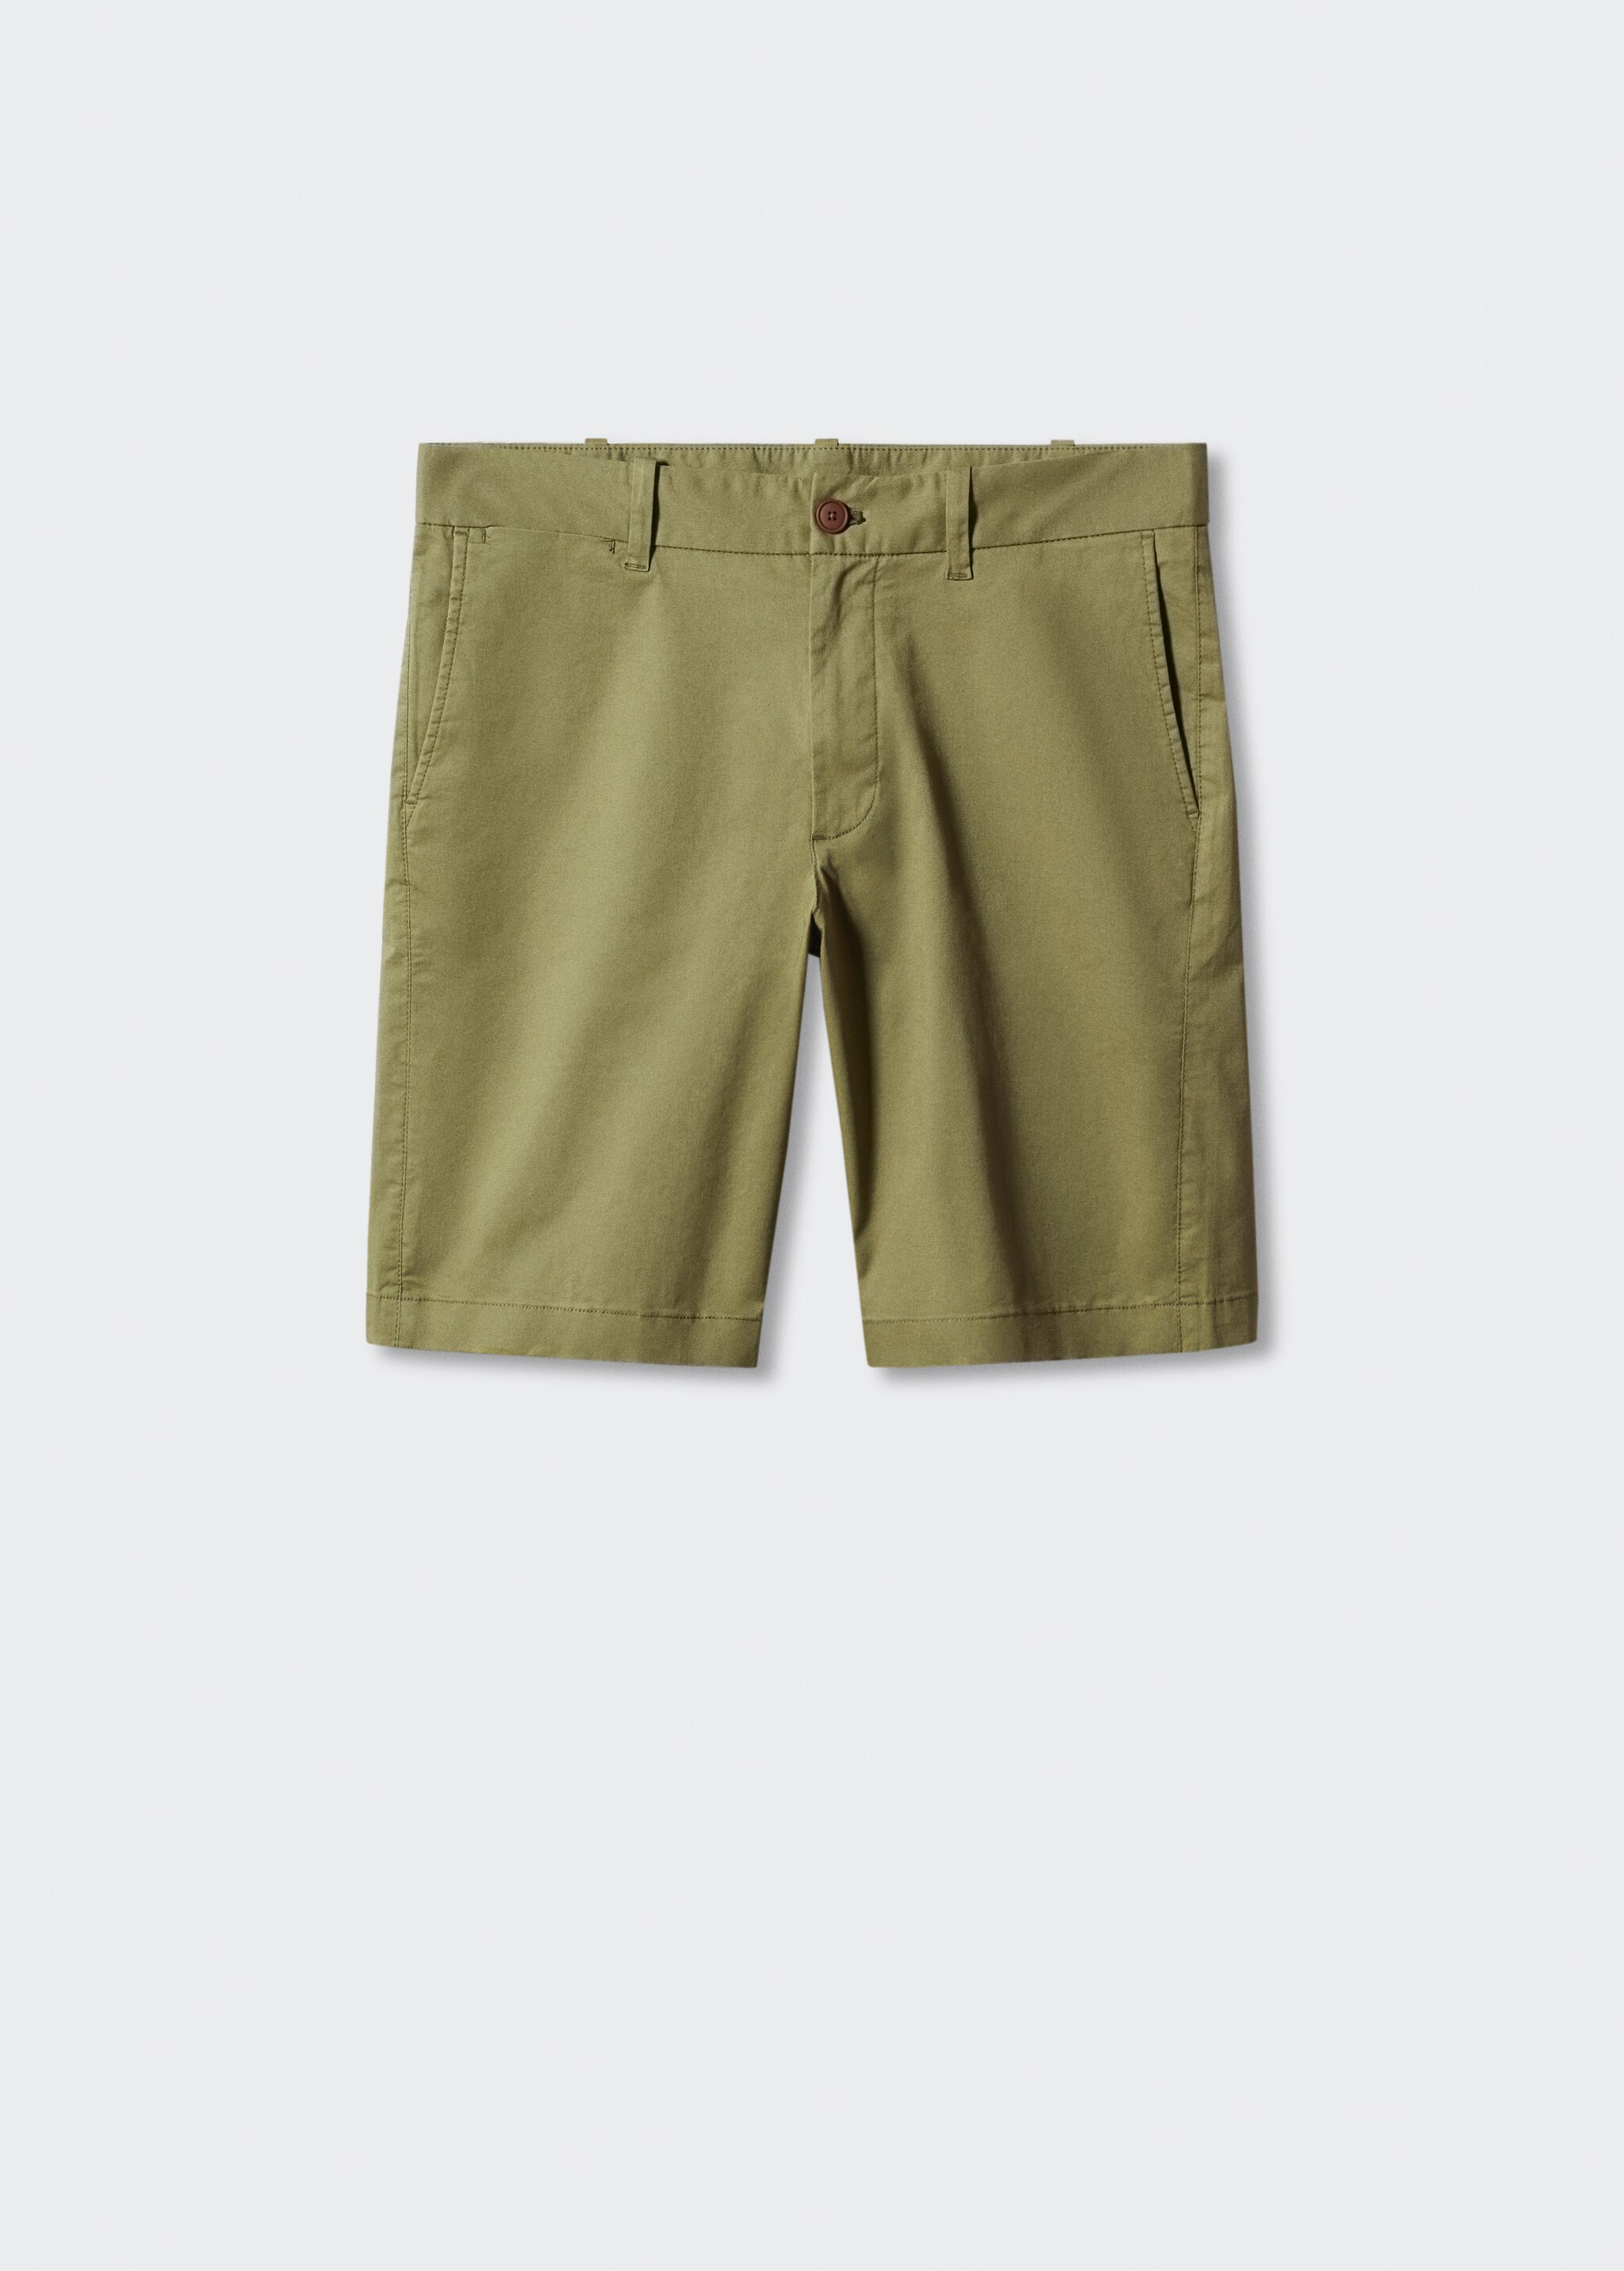 Slim fit chino cotton Bermuda shorts - Articol fără model